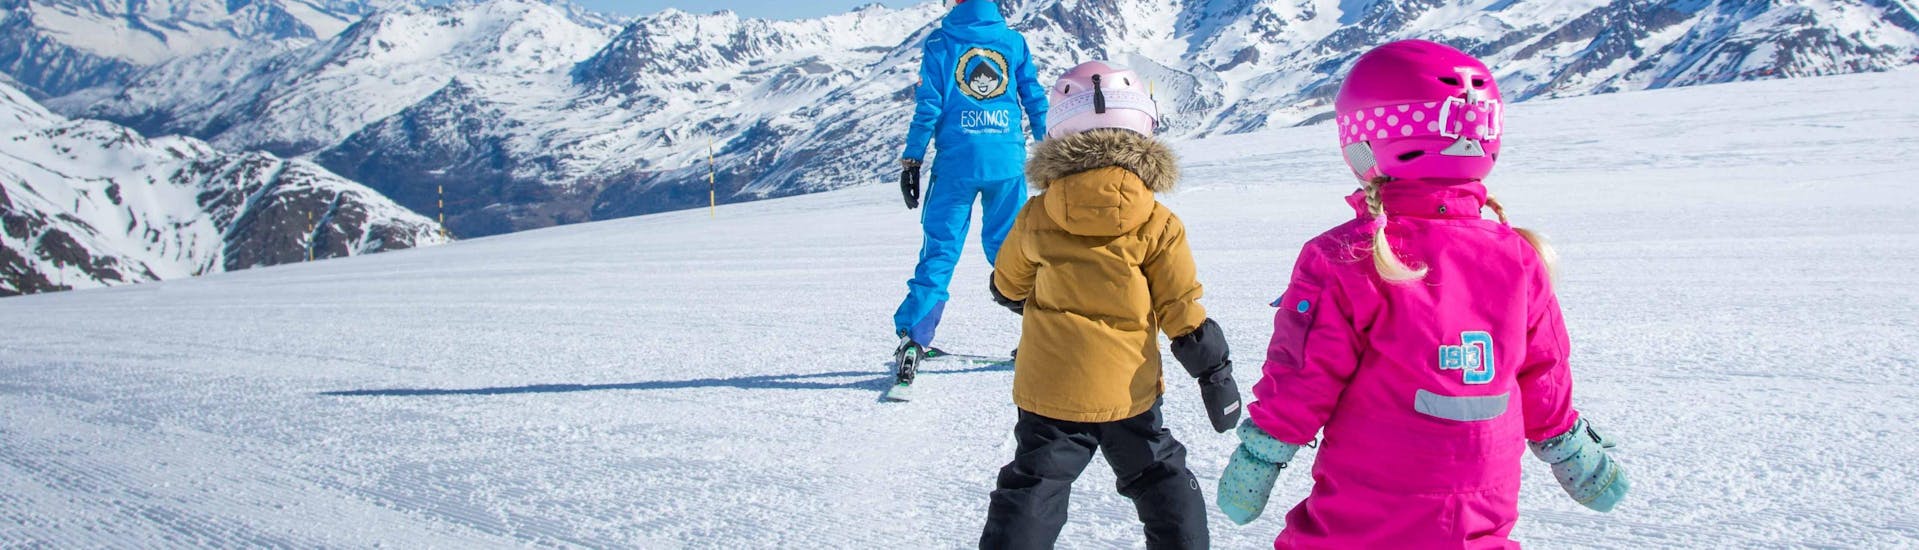 Lezioni private di sci per bambini a partire da 8 anni per tutti i livelli.